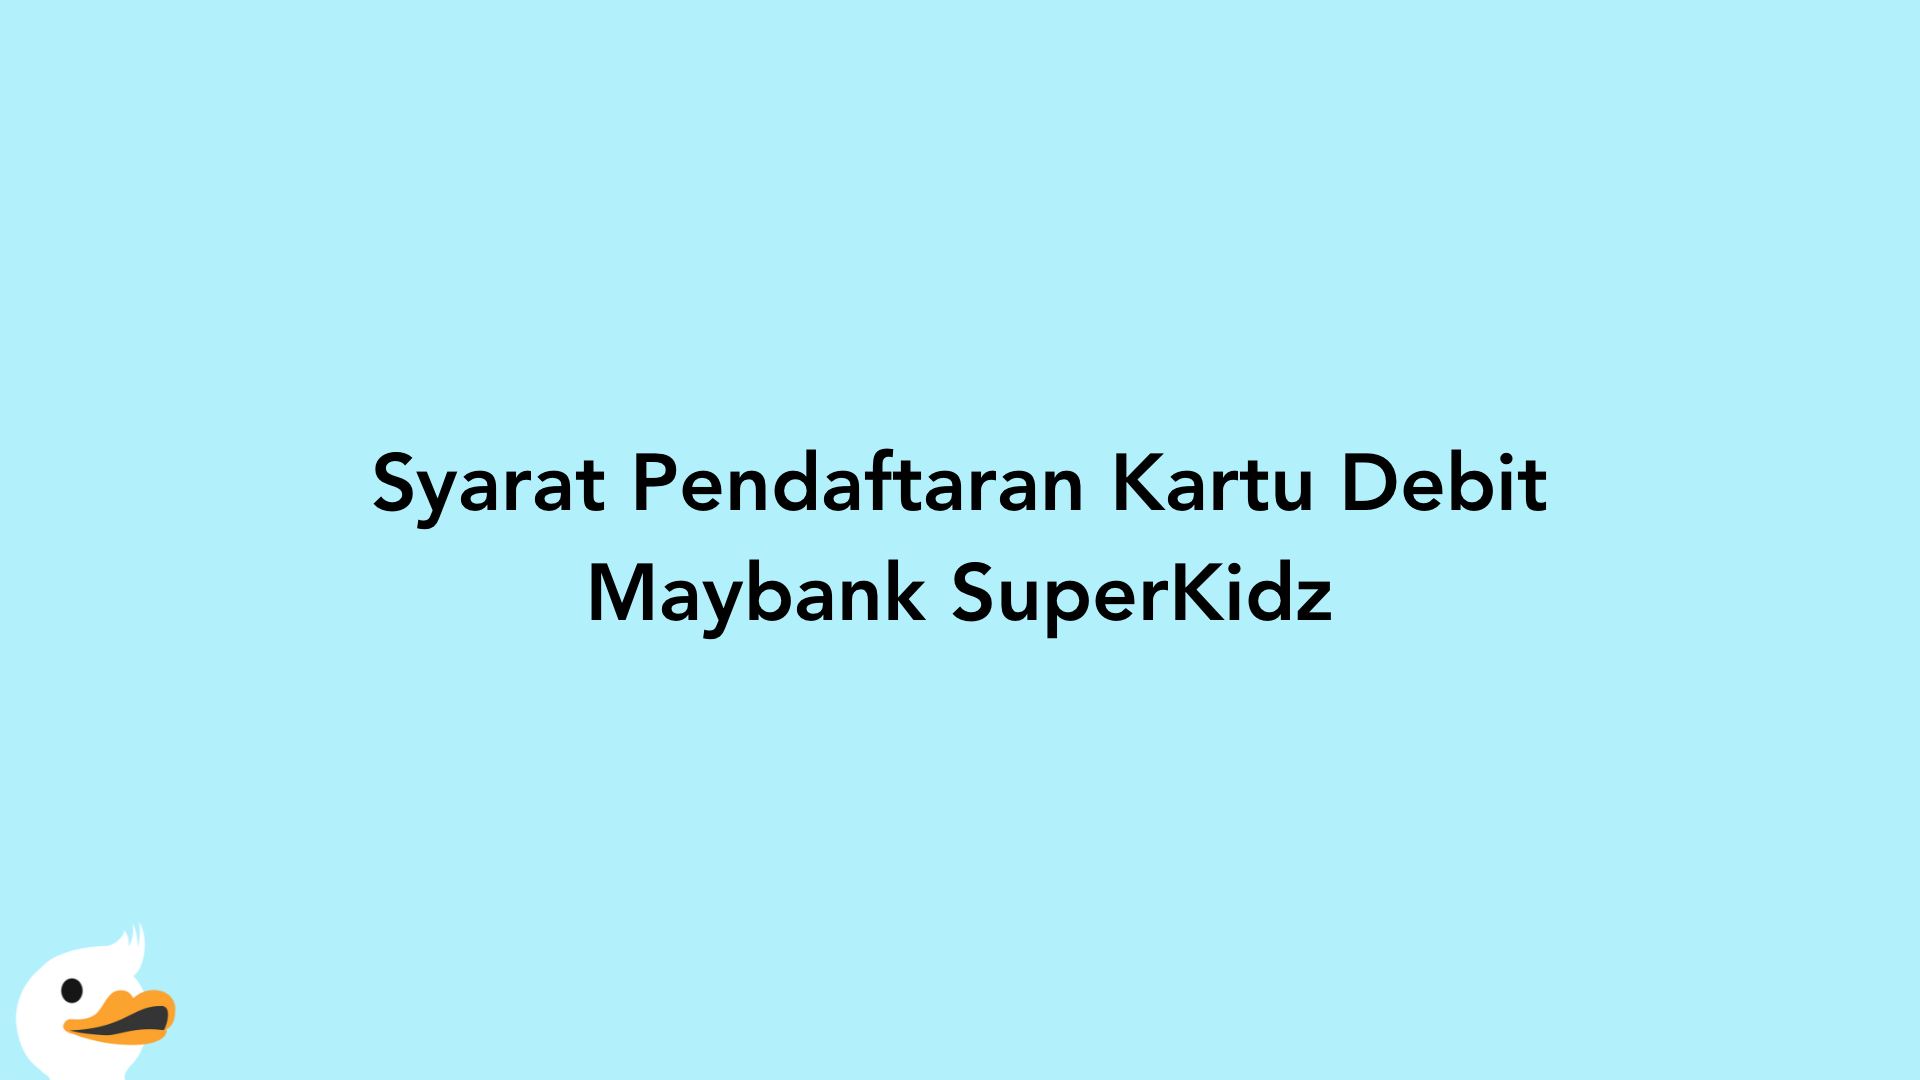 Syarat Pendaftaran Kartu Debit Maybank SuperKidz